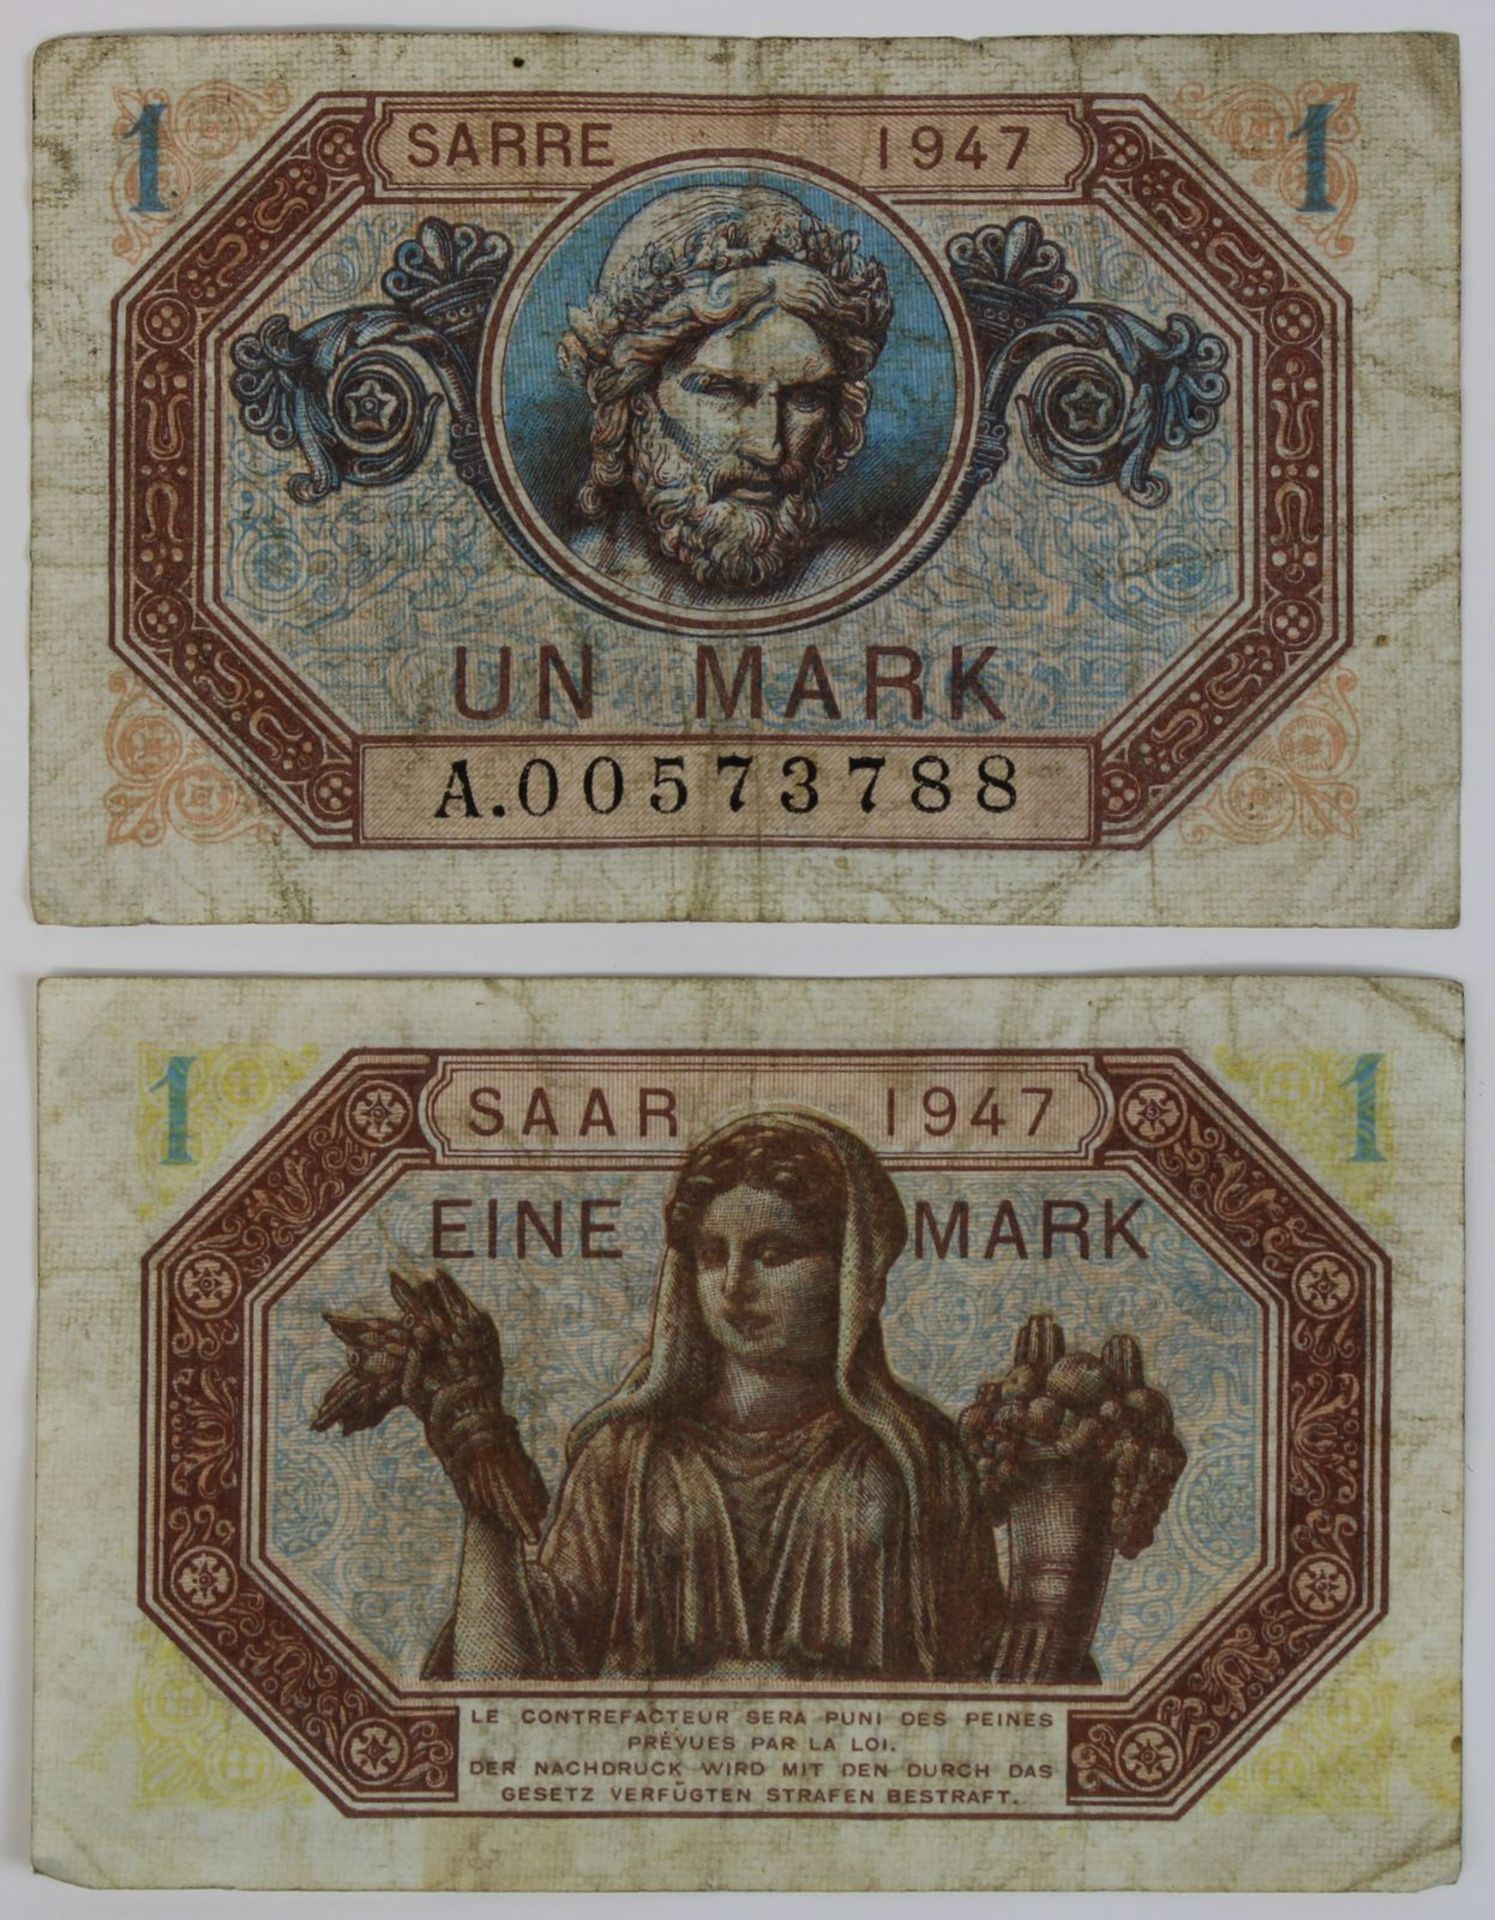 Zwei Banknoten zu einer Mark, Saar 1947, Vorderseite mit französischer Beschriftung, Rückseite mit